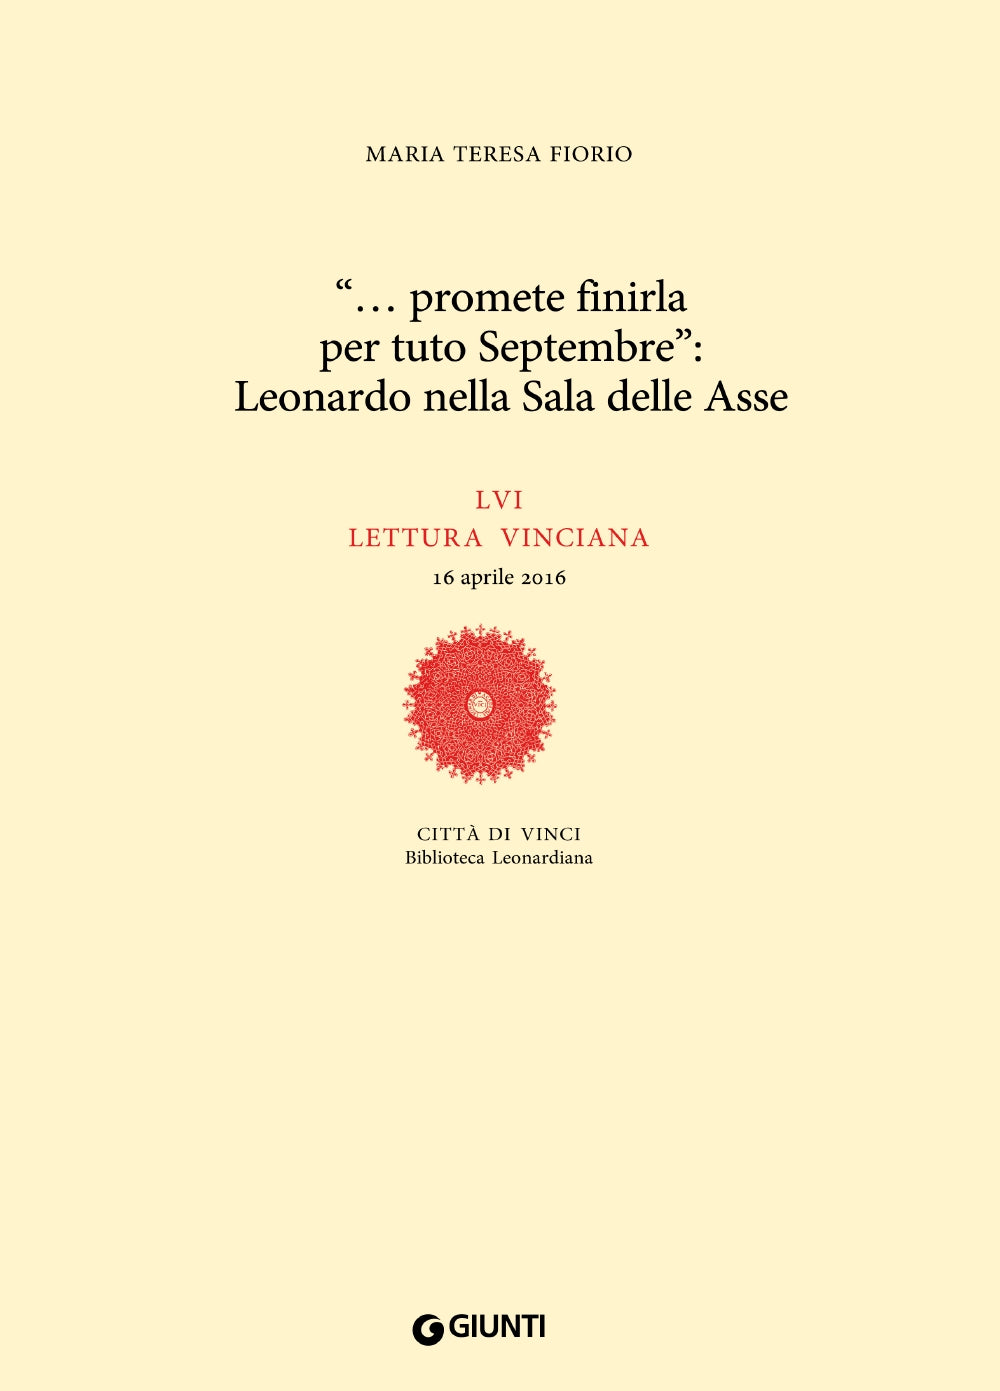 ''... promete finirla per tuto Septembre'': Leonardo nella Sala delle Asse. LVI lettura vinciana - 16 aprile 2016